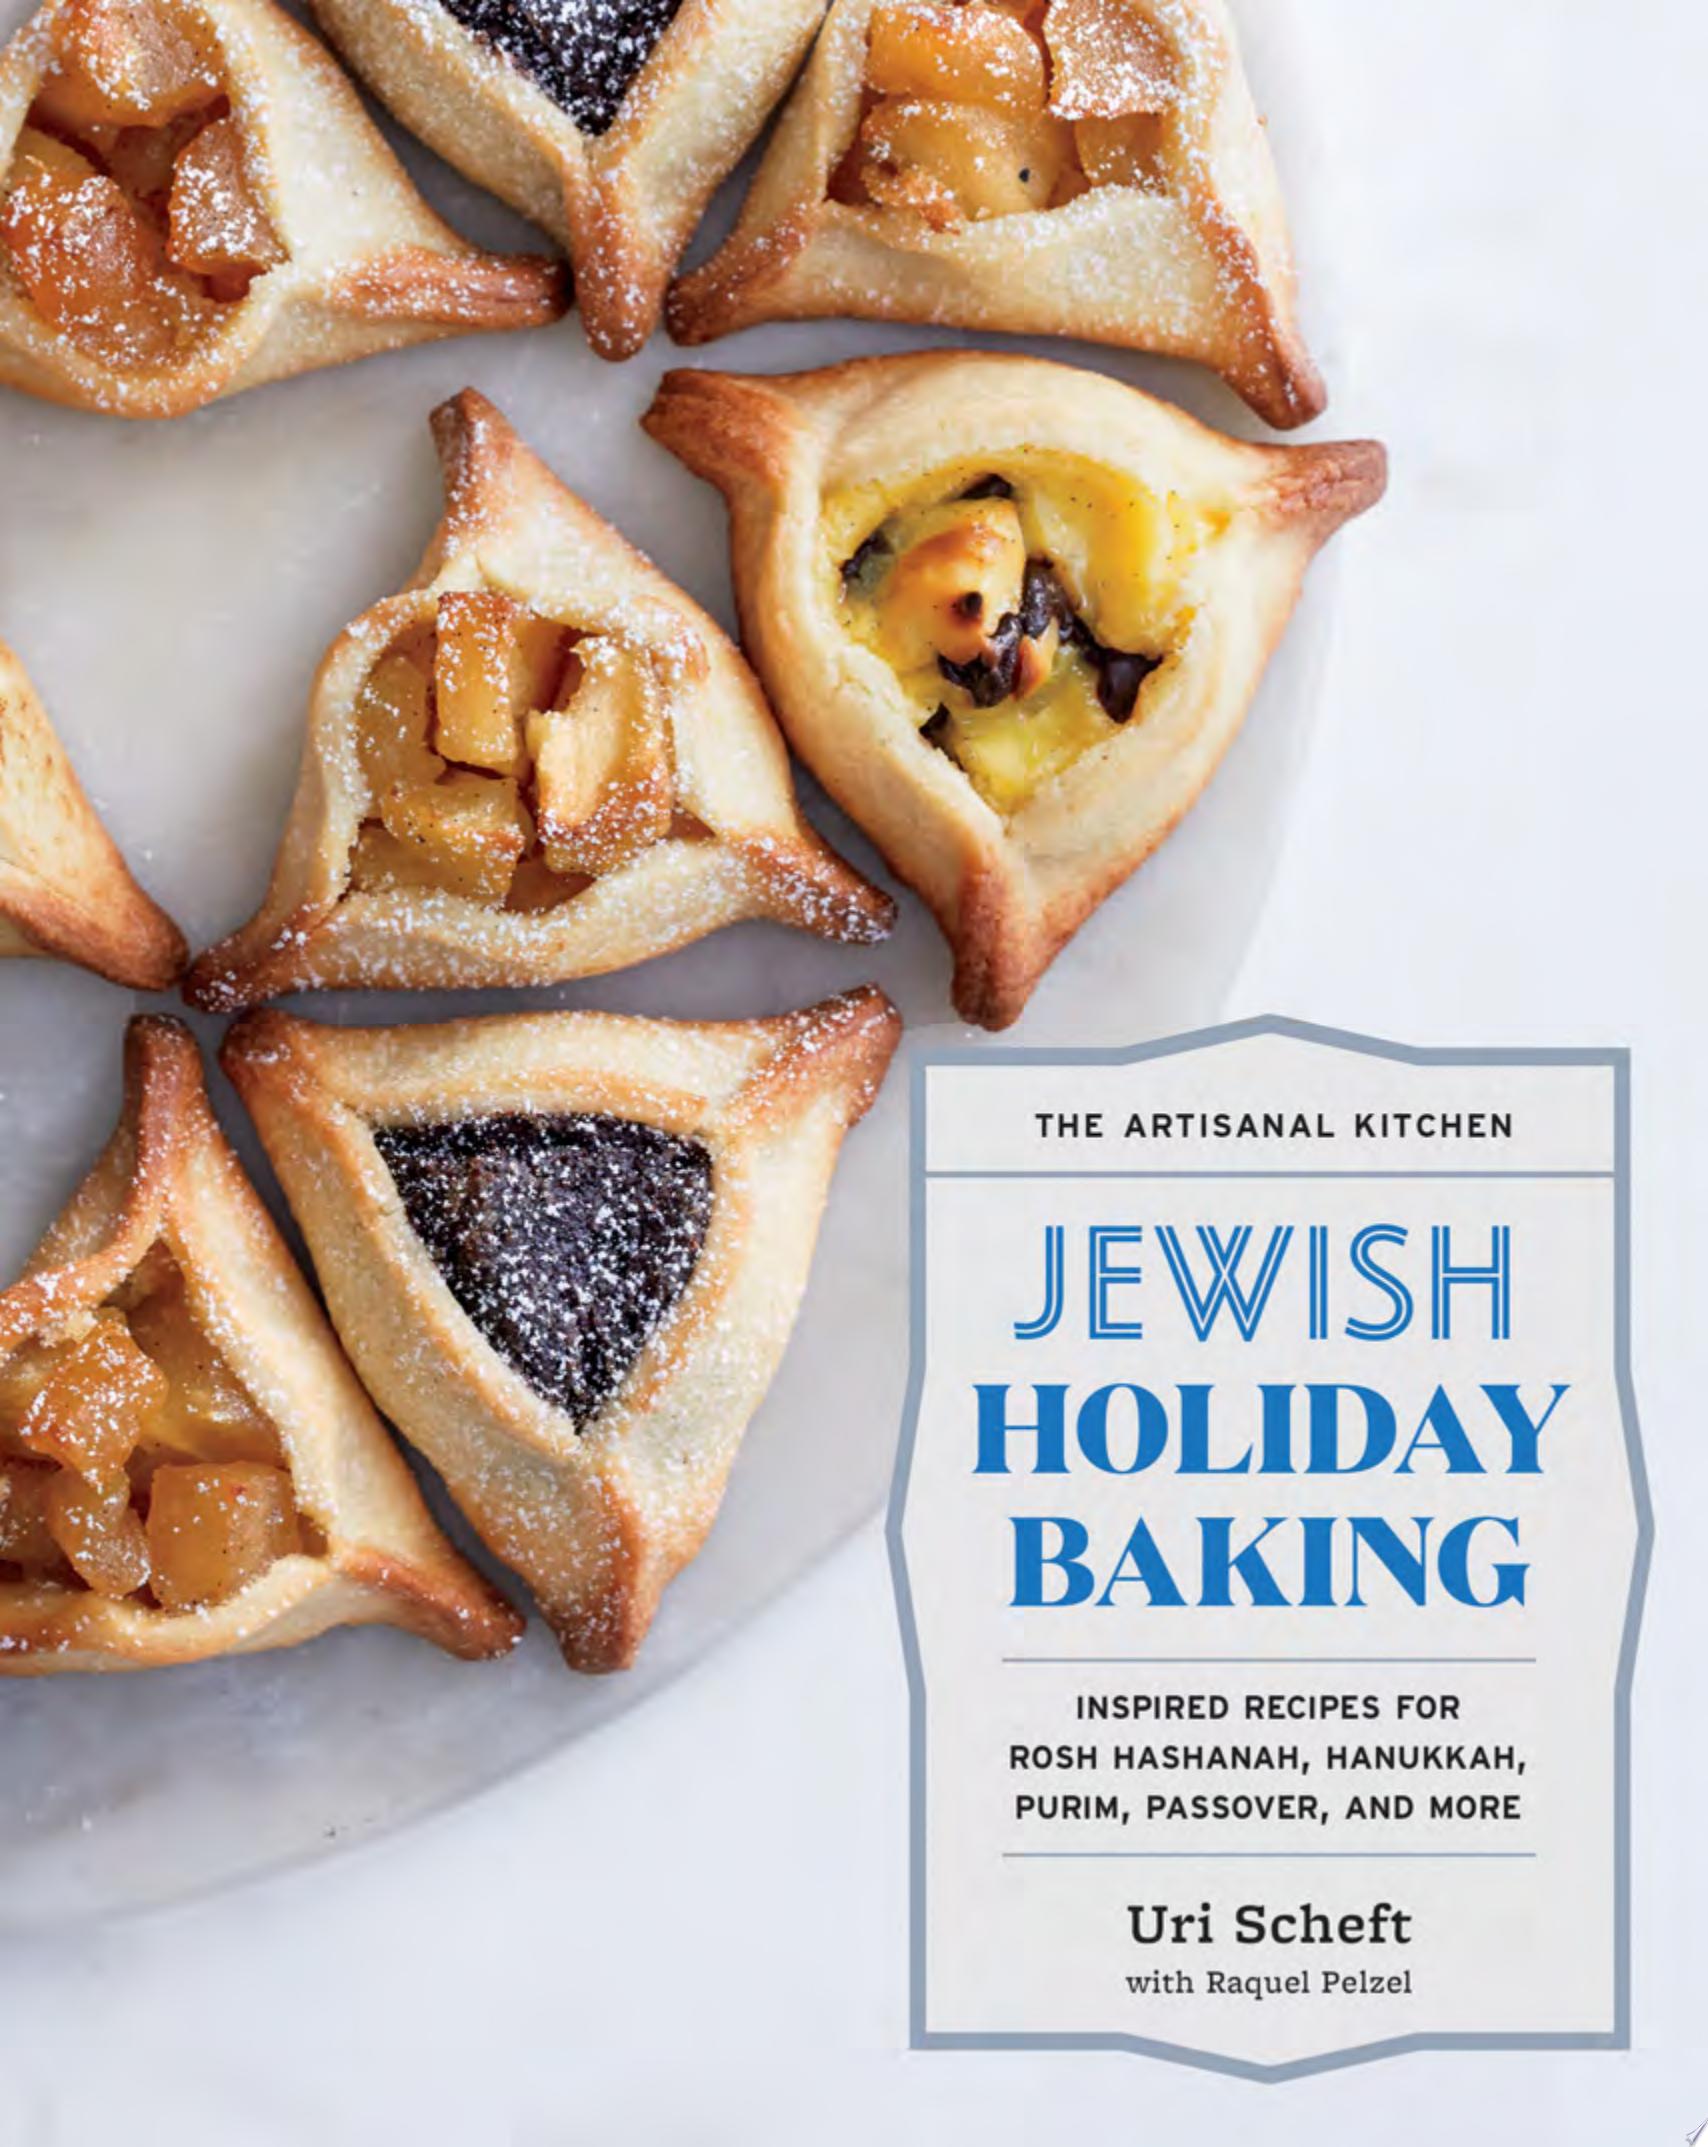 Image for "The Artisanal Kitchen: Jewish Holiday Baking"